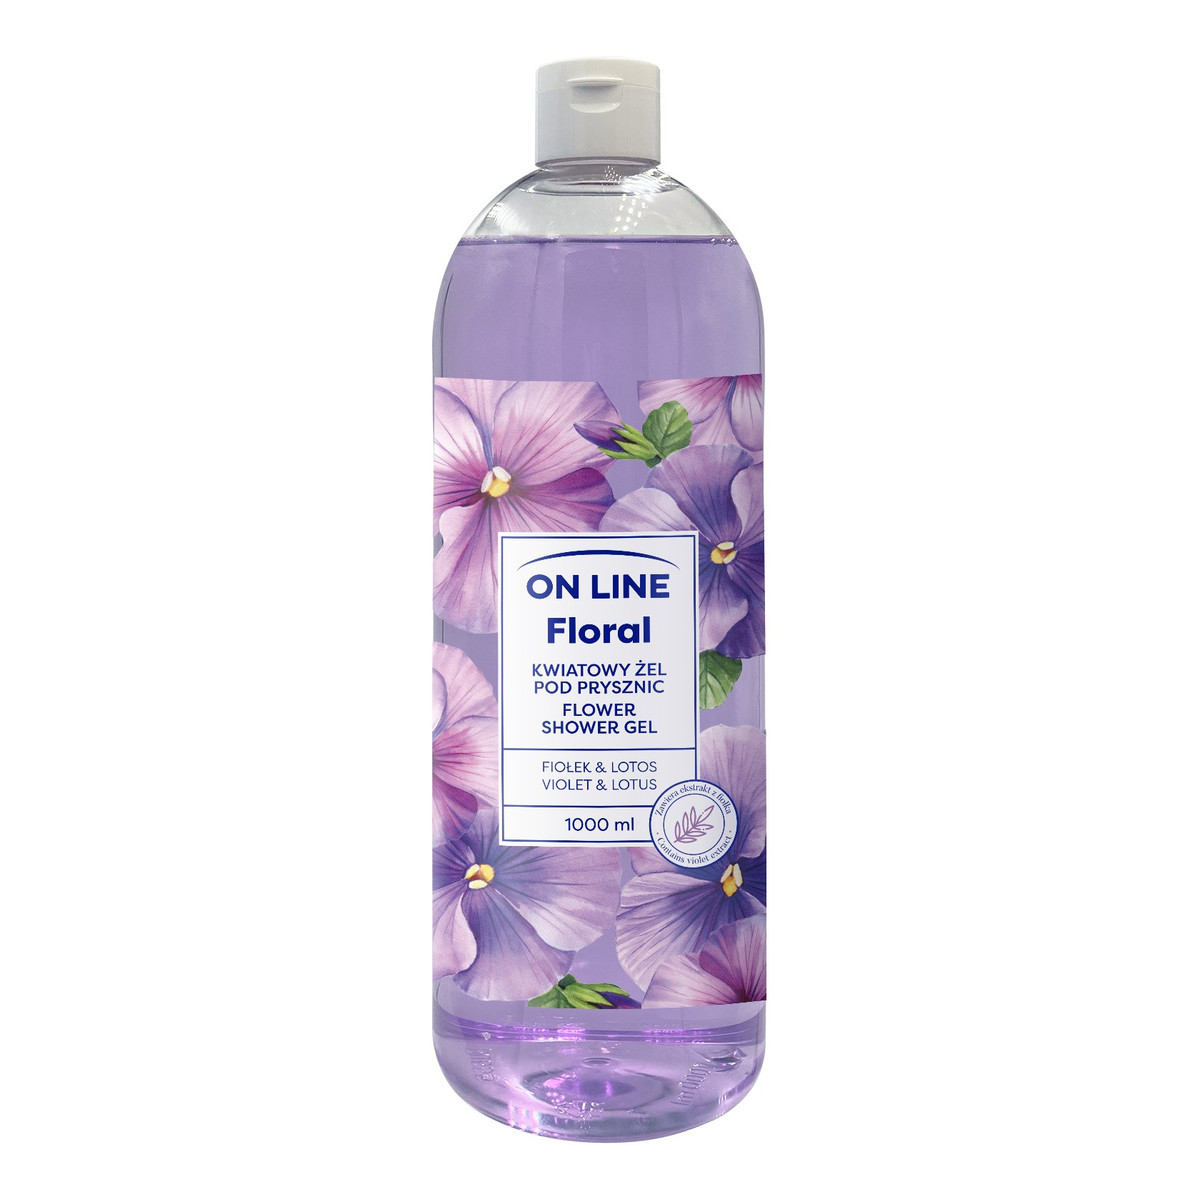 On Line Floral Kwiatowy żel pod prysznic - Fiołek & Lotos 1000ml